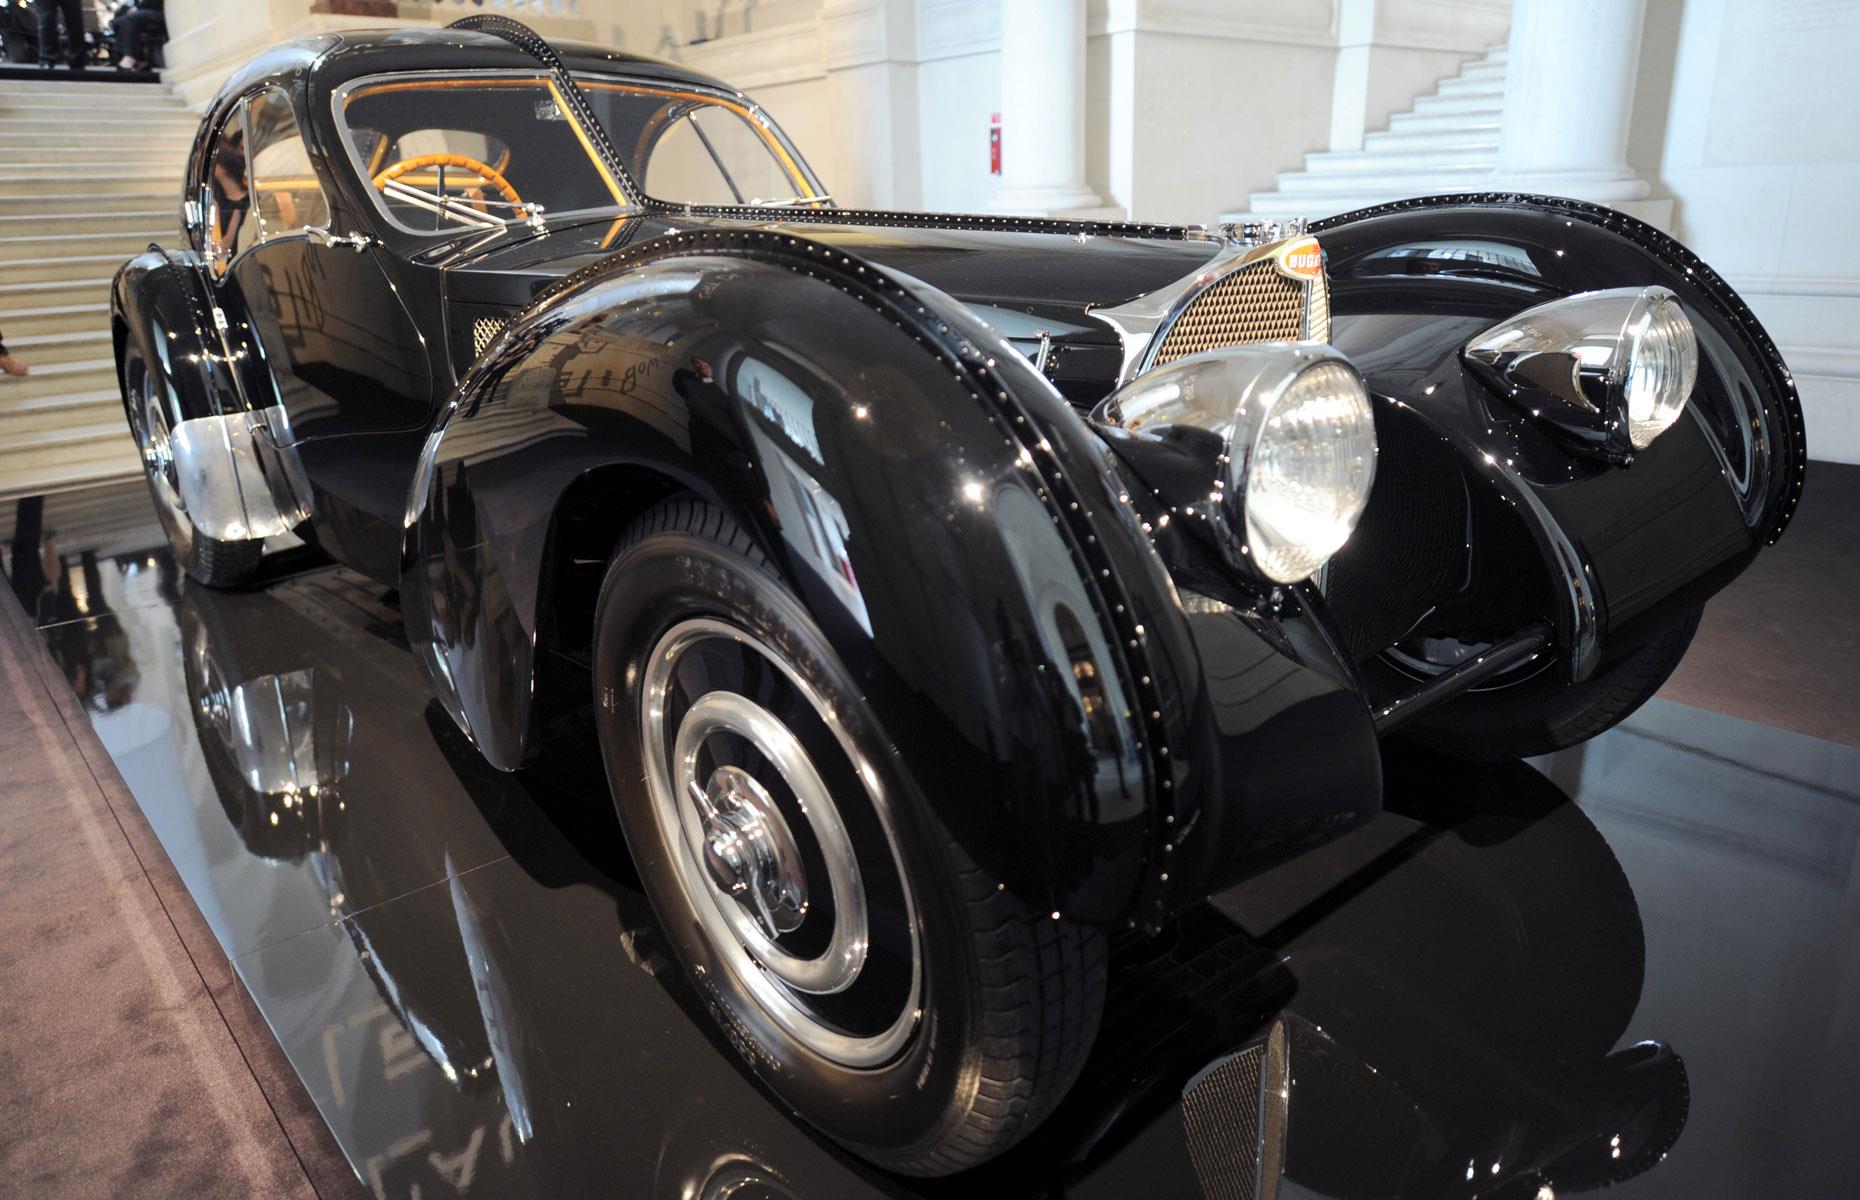 Der Oldtimer, an den La Voiture Noire angelehnt ist, ist deutlich mehr wert als der Neuwagen von 2019. Tatsächlich hat der legendäre Bugatti 57SC Atlantic von 1938, das Juwel der Autosammlung von Modedesigner Ralph Lauren, einen Wert von über 40 Millionen US-Dollar (35,7 Mio. Euro). Insgesamt besitzt der US-Milliardär 60 seltene Oldtimer, darunter einen Bentley Blower von 1929 und einen Ferrari 250 Testa Rossa von 1958.